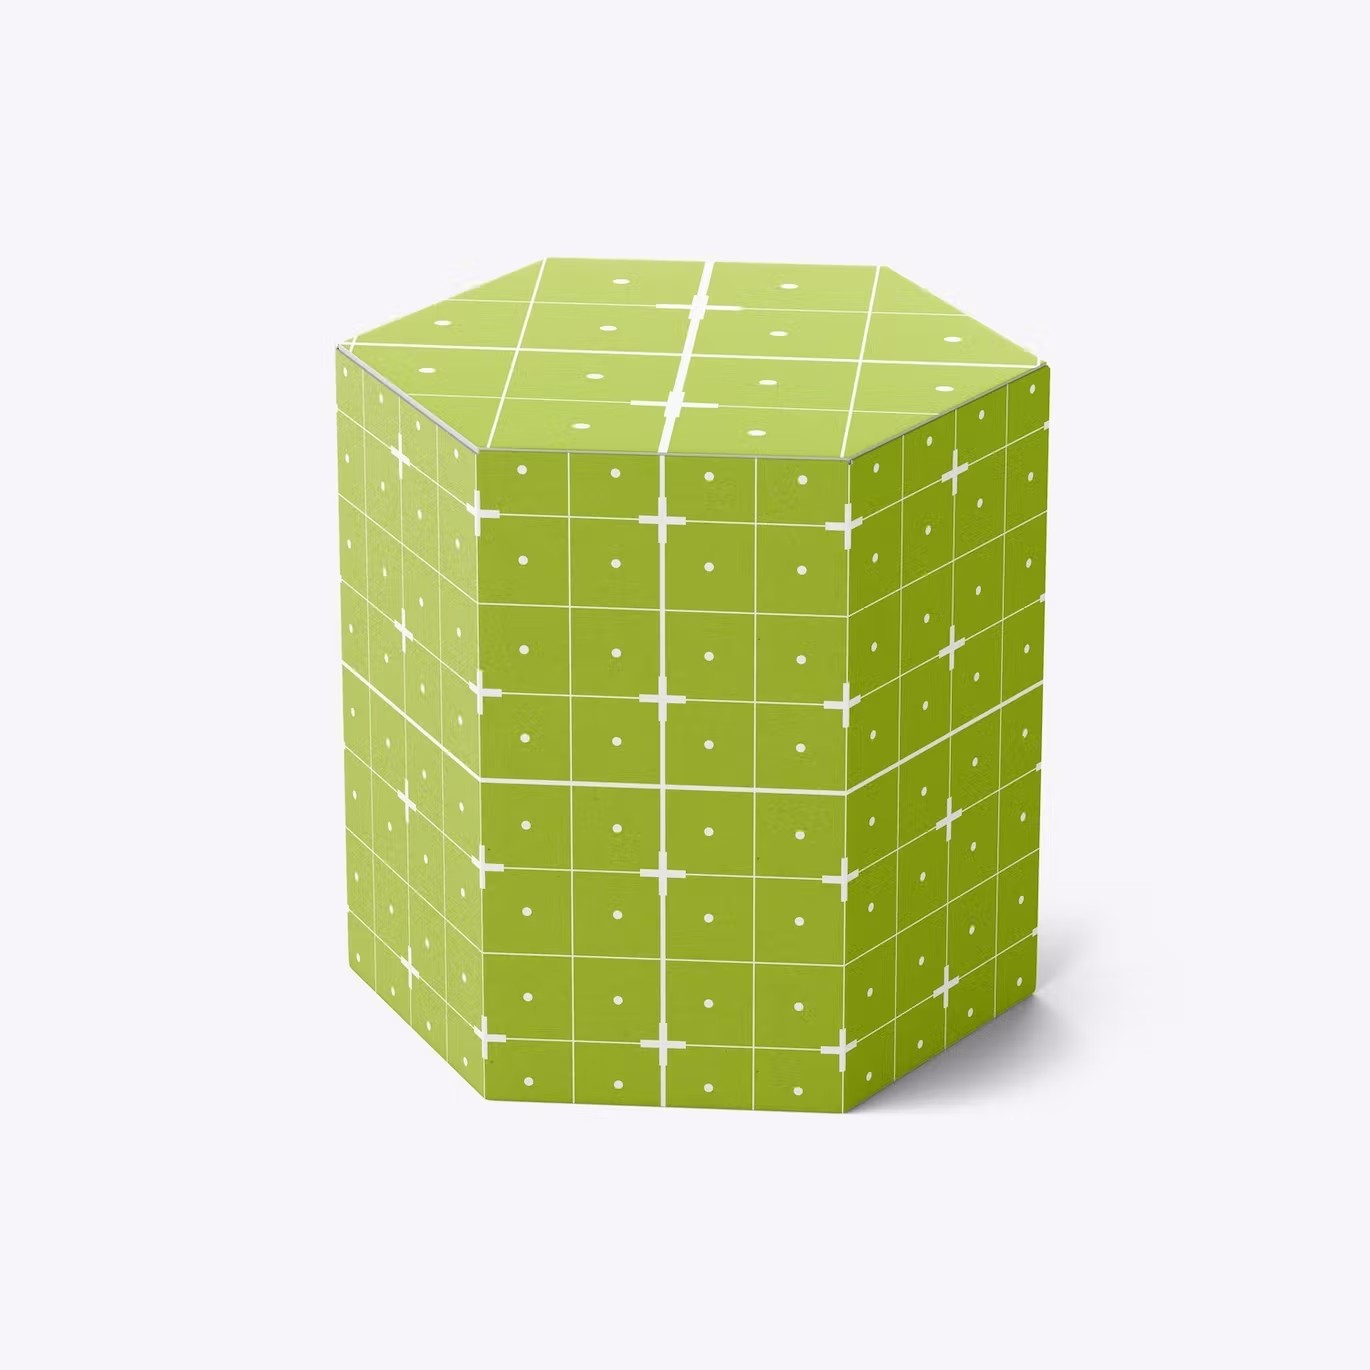 六边形长方体纸盒包装设计样机 Hexagonal Box Mockup 样机素材 第16张